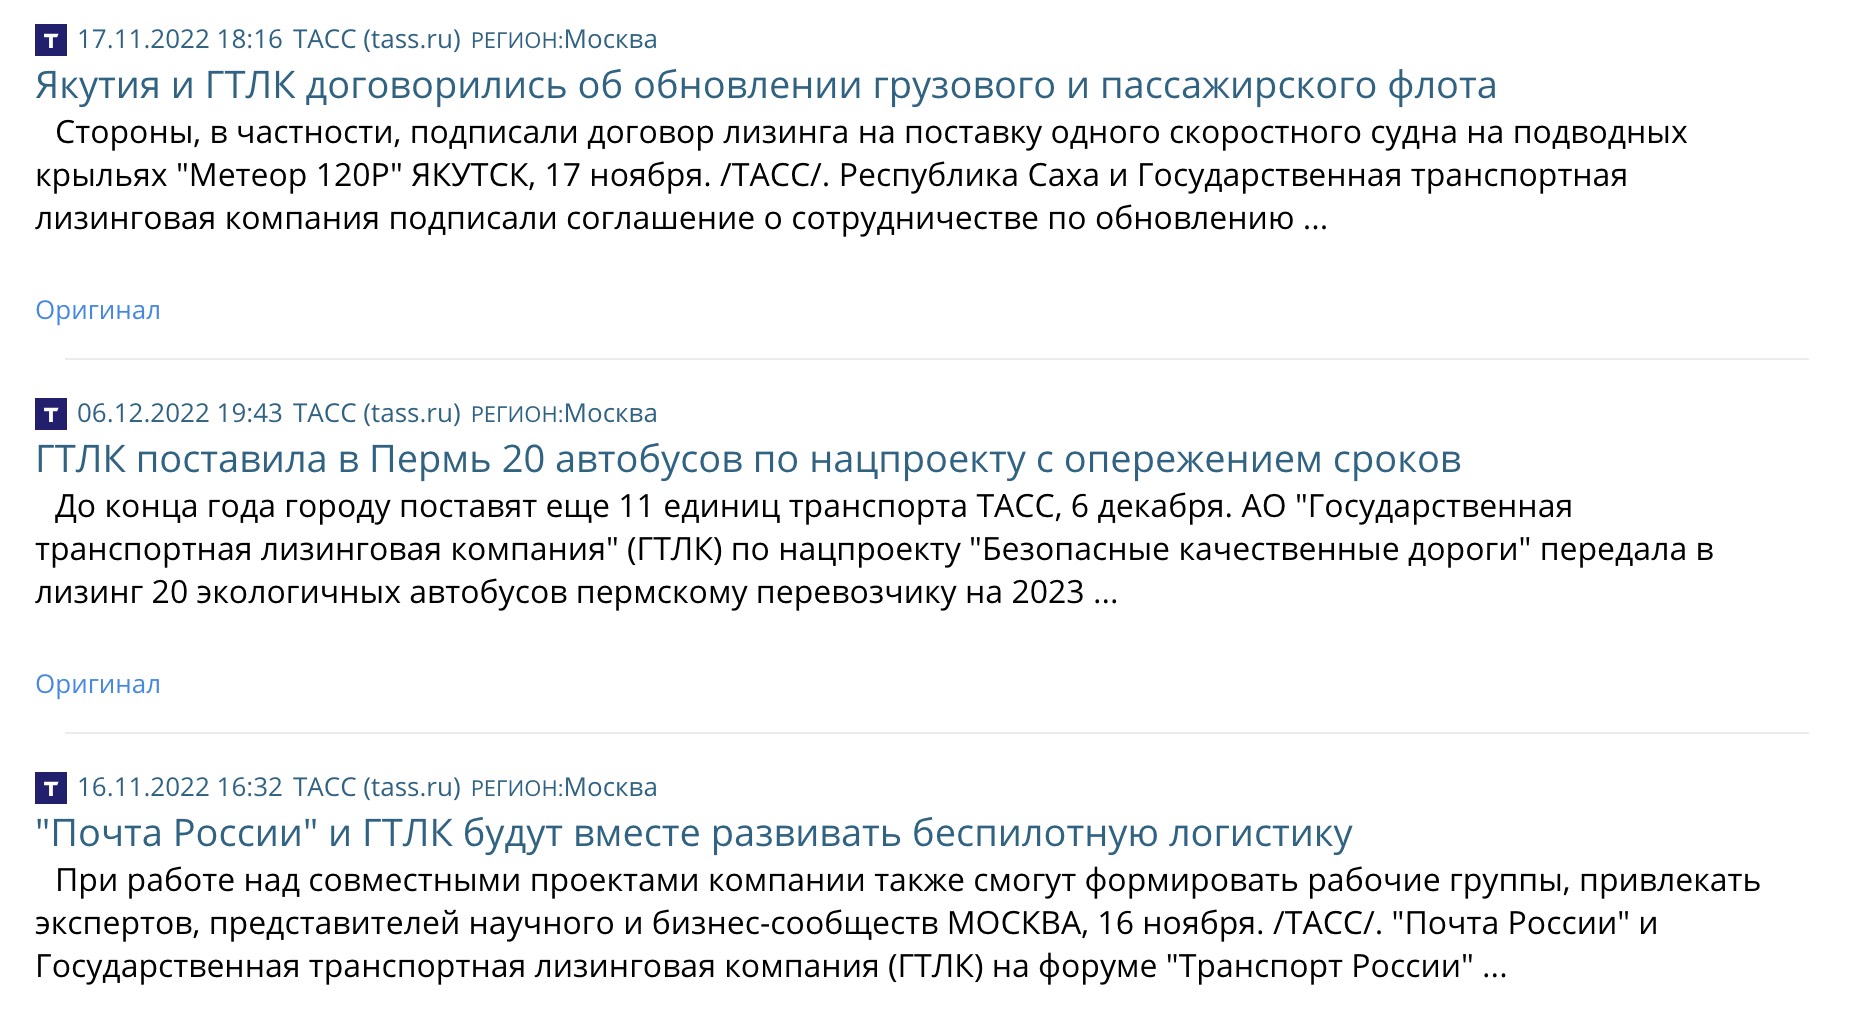 Фрагмент списка наиболее заметных публикаций в СМИ о компании «ГТЛК».